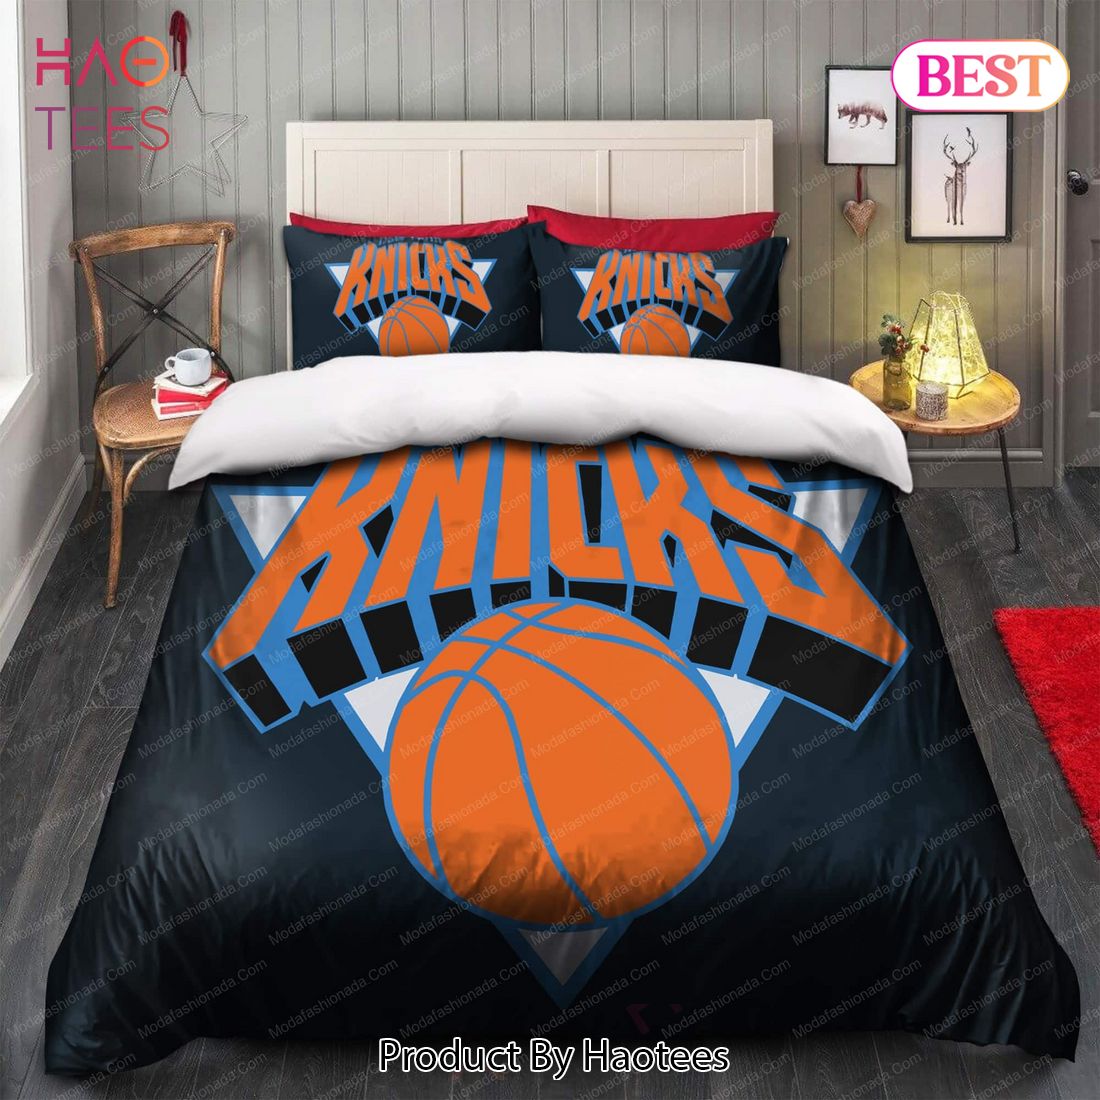 Buy 1996-2011 Logo New York Knicks NBA 166 Bedding Sets Bed Sets, Bedroom Sets, Comforter Sets, Duvet Cover, Bedspread